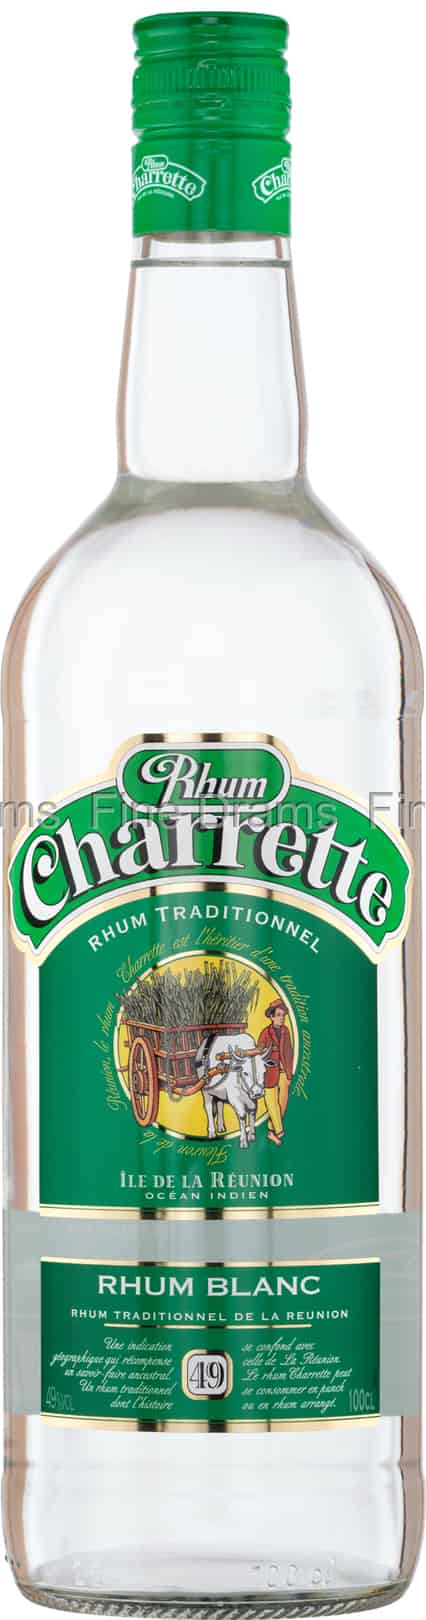 Rhum Charrette traditionel 49°, bouteille Edition limitée Case les Hauts    - Shopping et Courses en ligne, livrés à domicile ou au bureau,  7j/7 à la Réunion